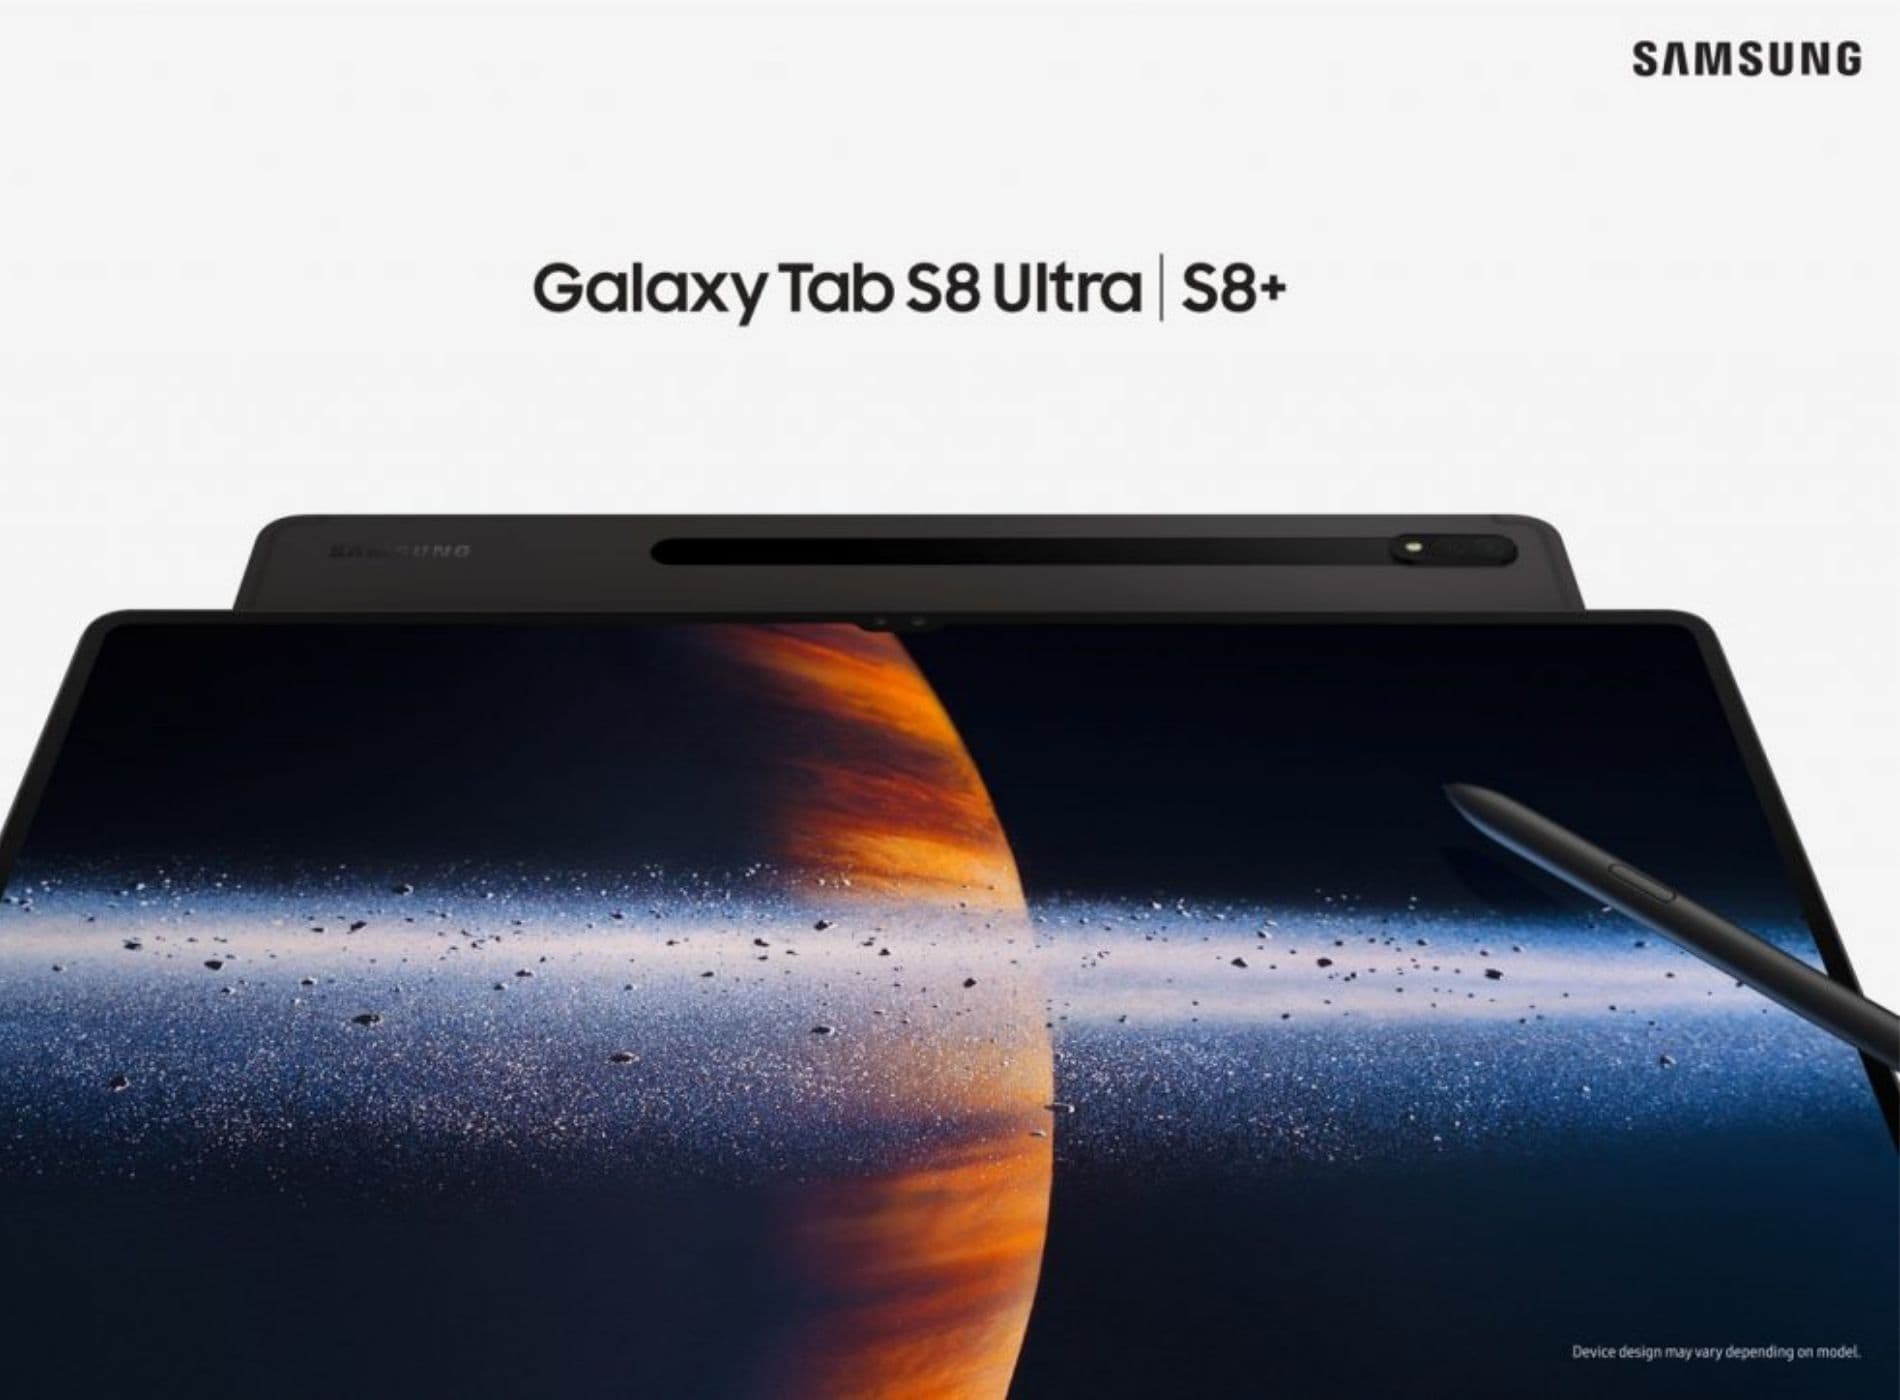 Todo sobre la Samsung Galaxy Tab S8 Ultra características y análisis completo